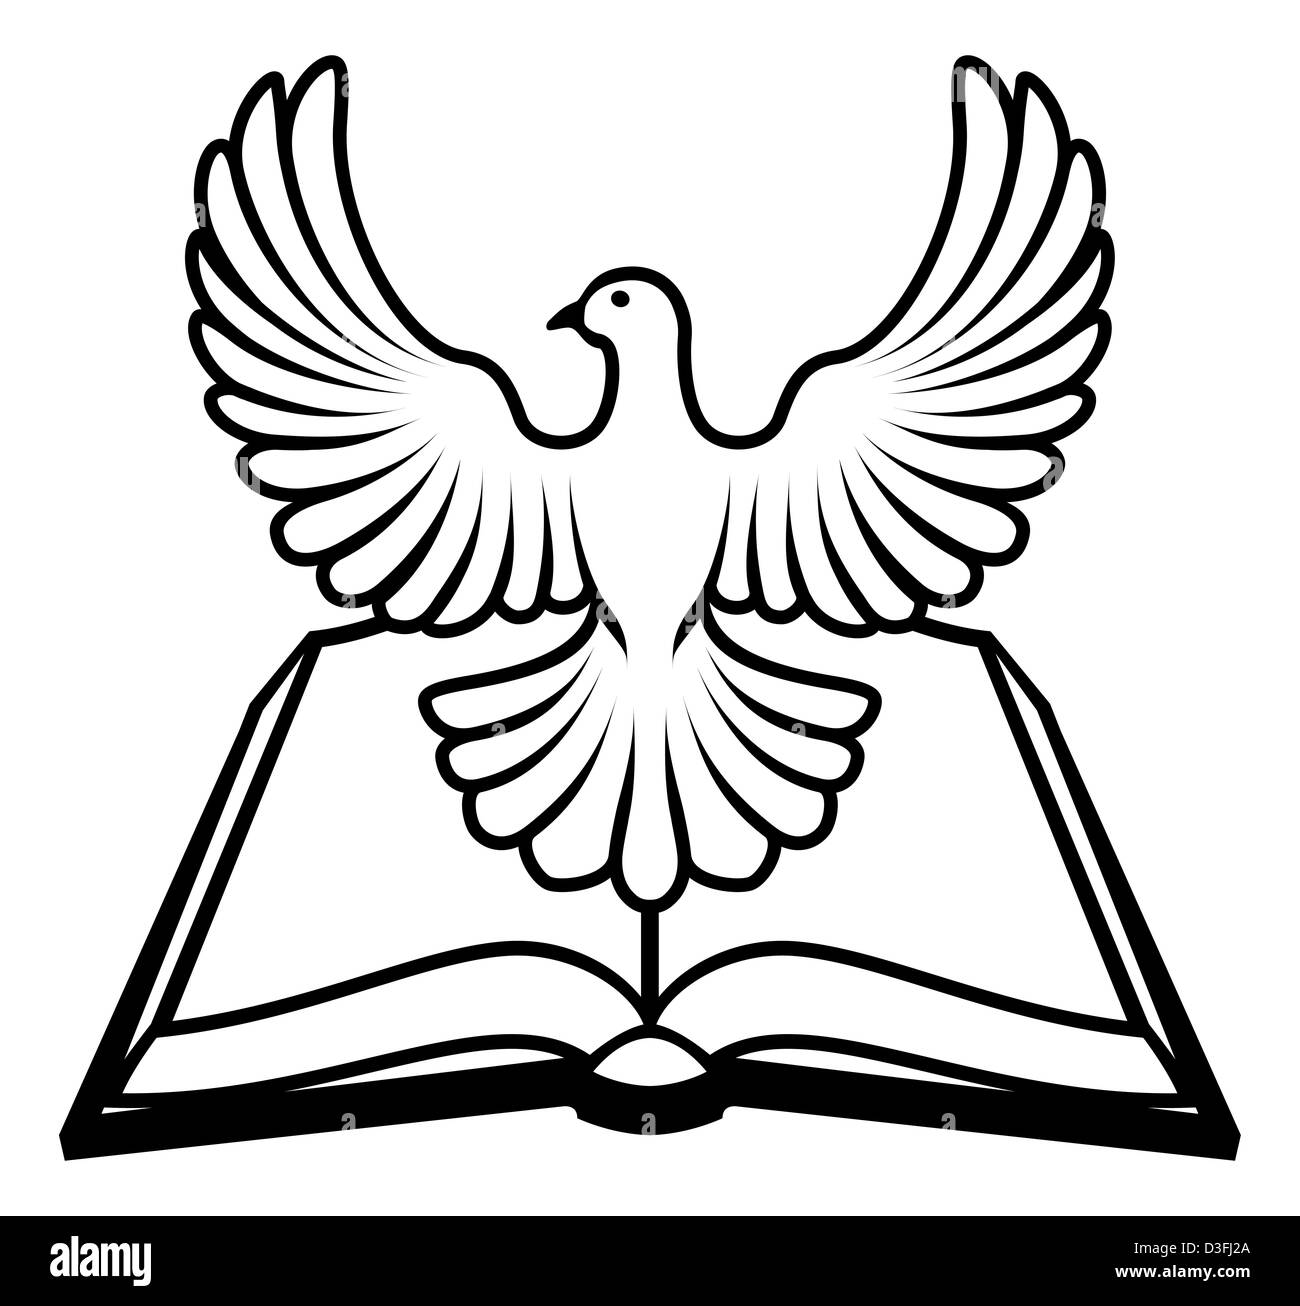 Christian-Bibel mit dem Heiligen Geist in Form einer weißen Taube. Stockfoto